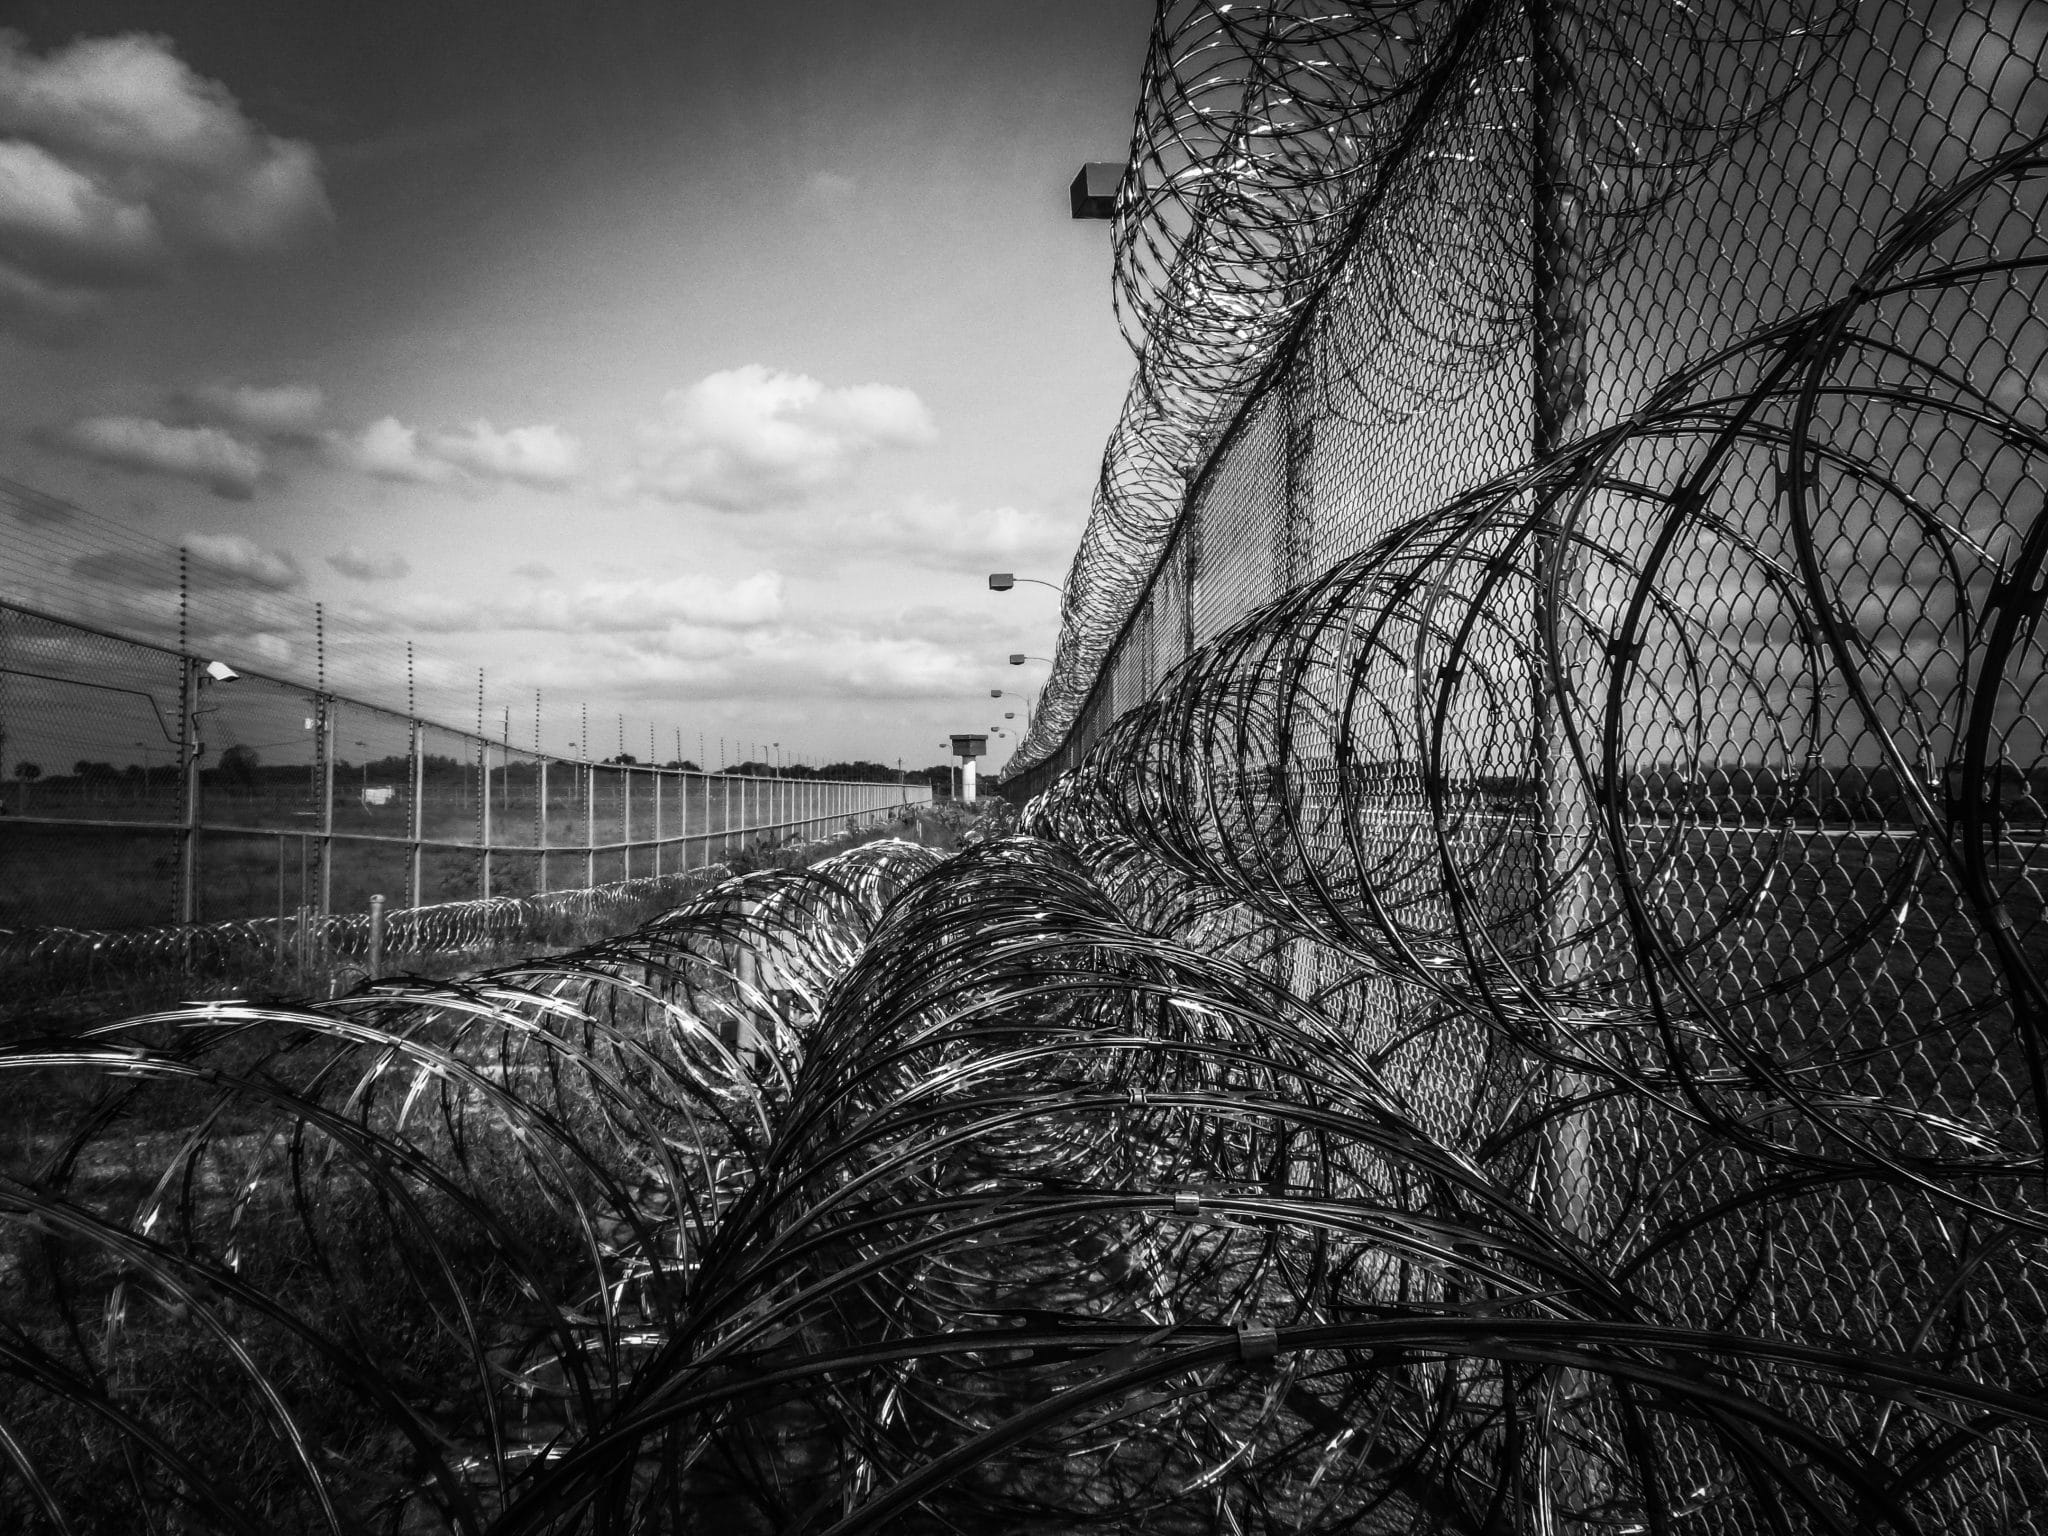 prison fence, razor ribbon, wire